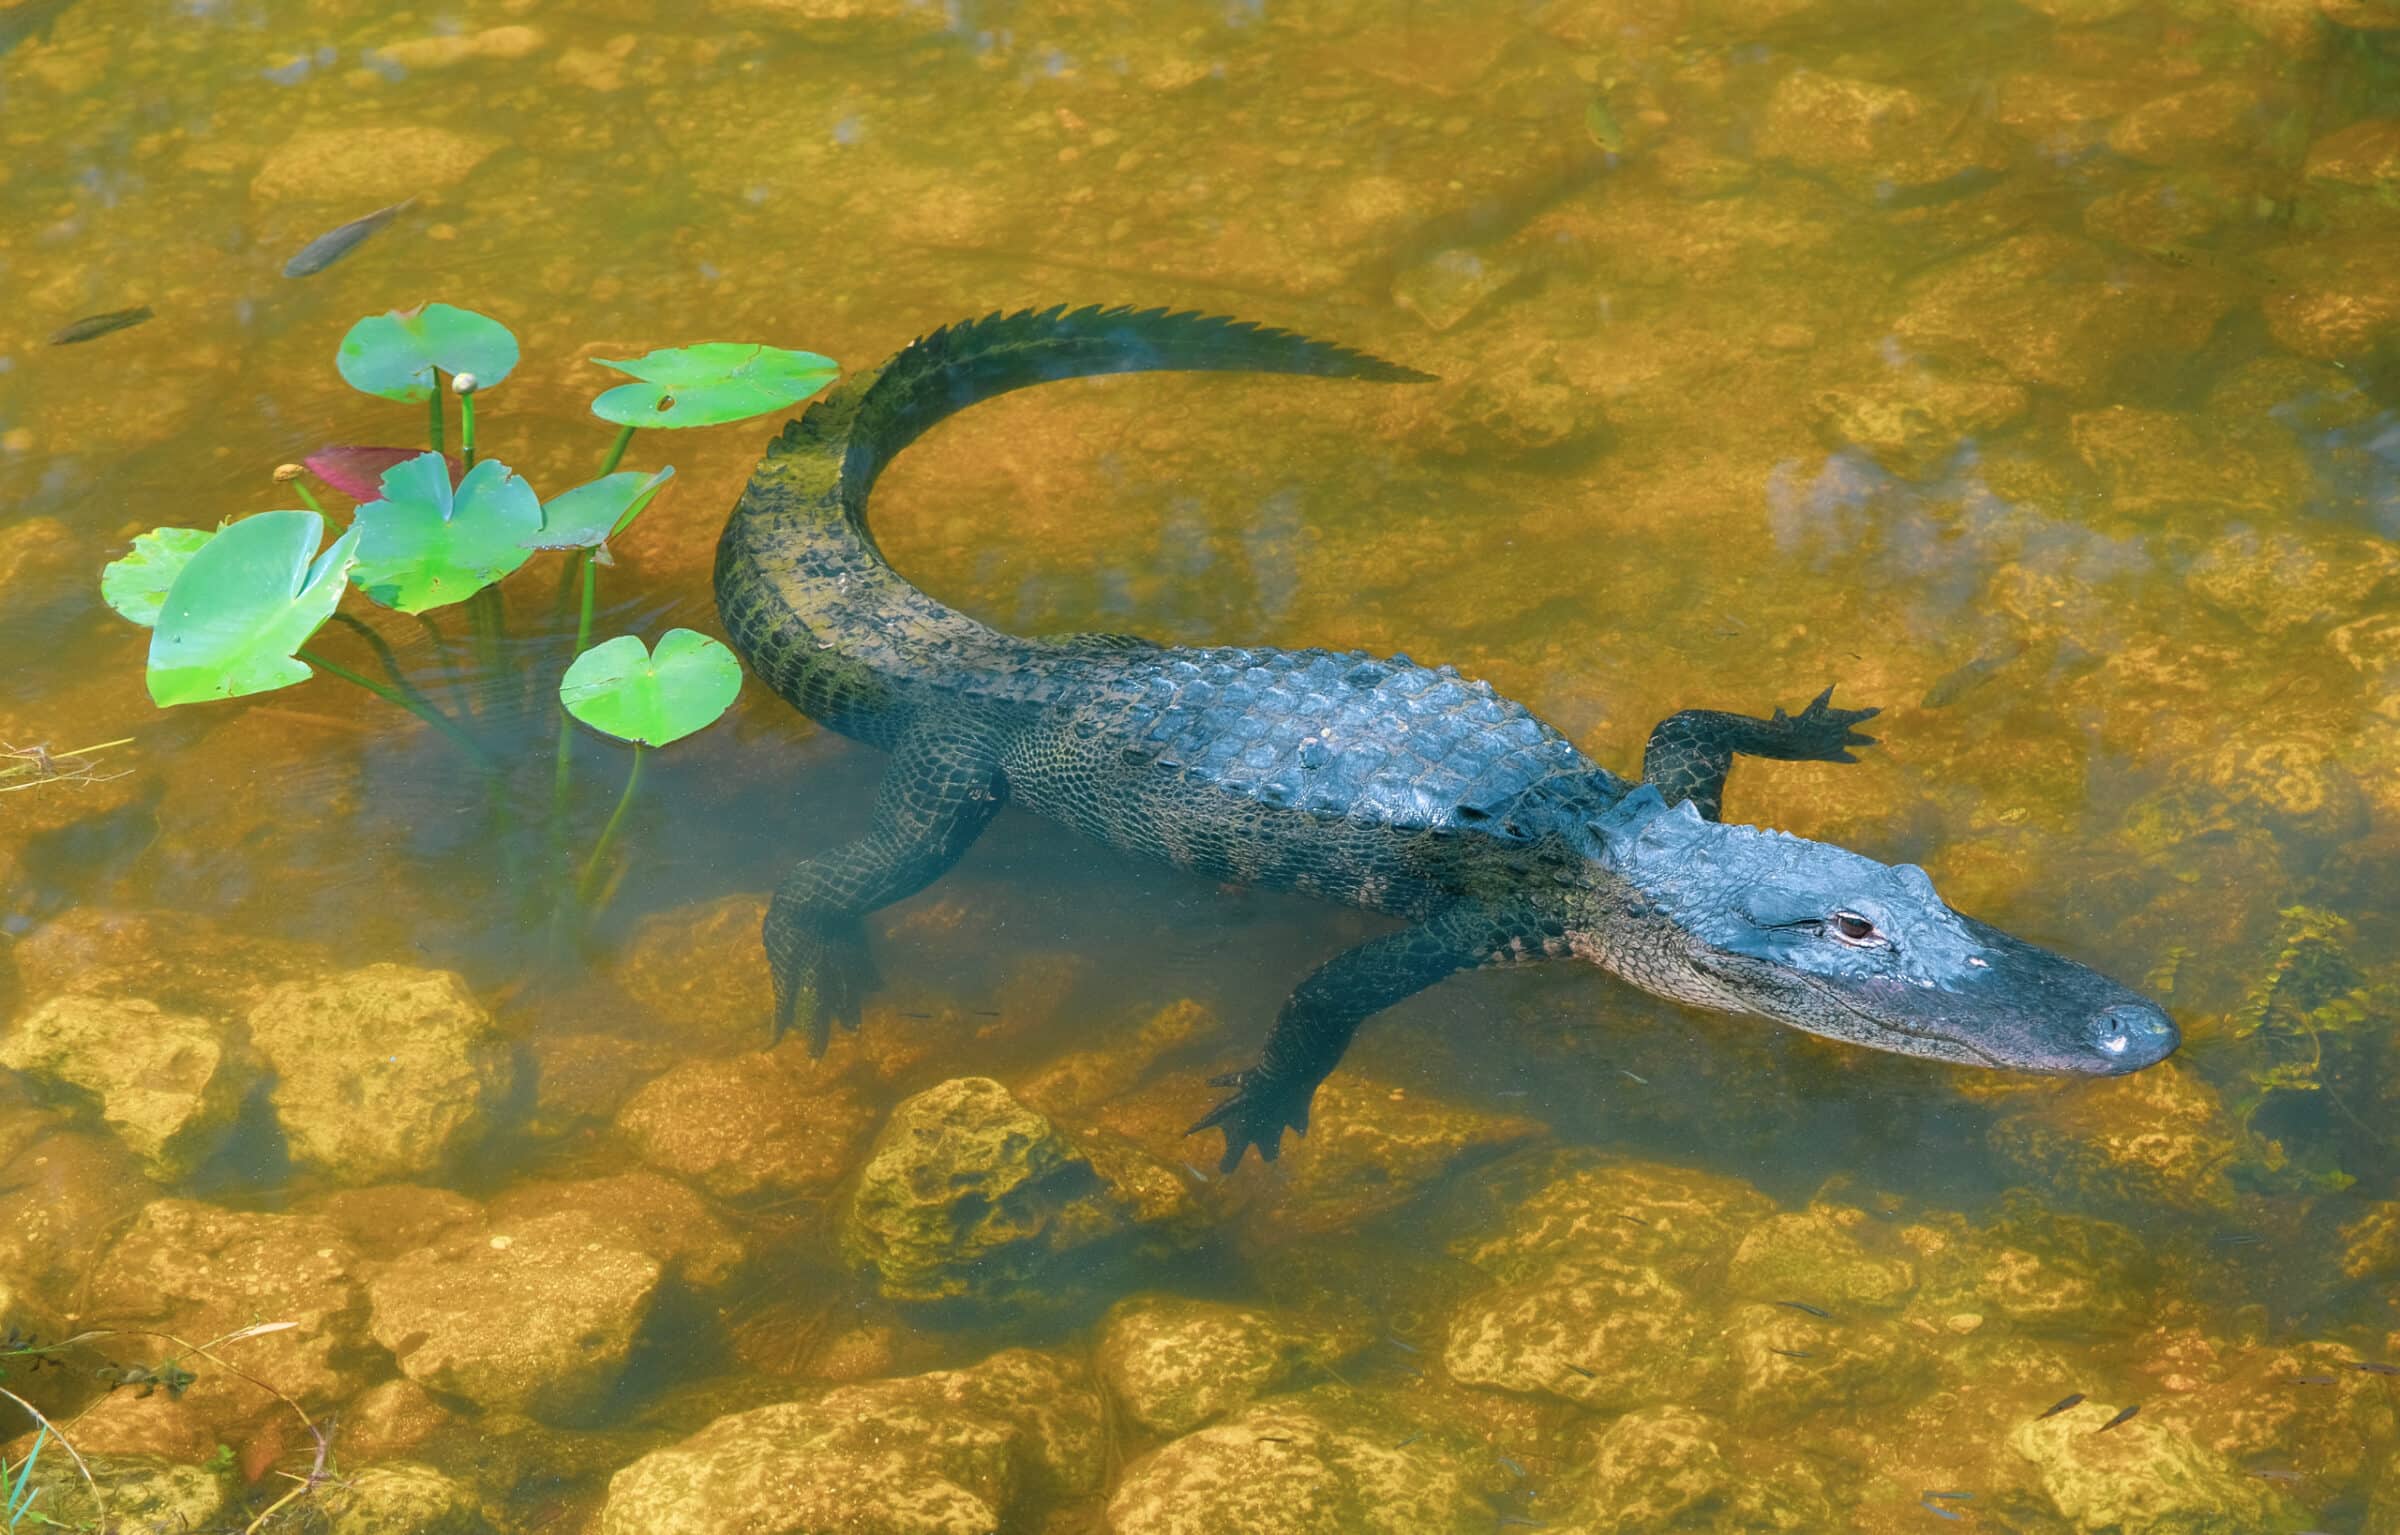 En av de många alligatorerna i Everglades National Park